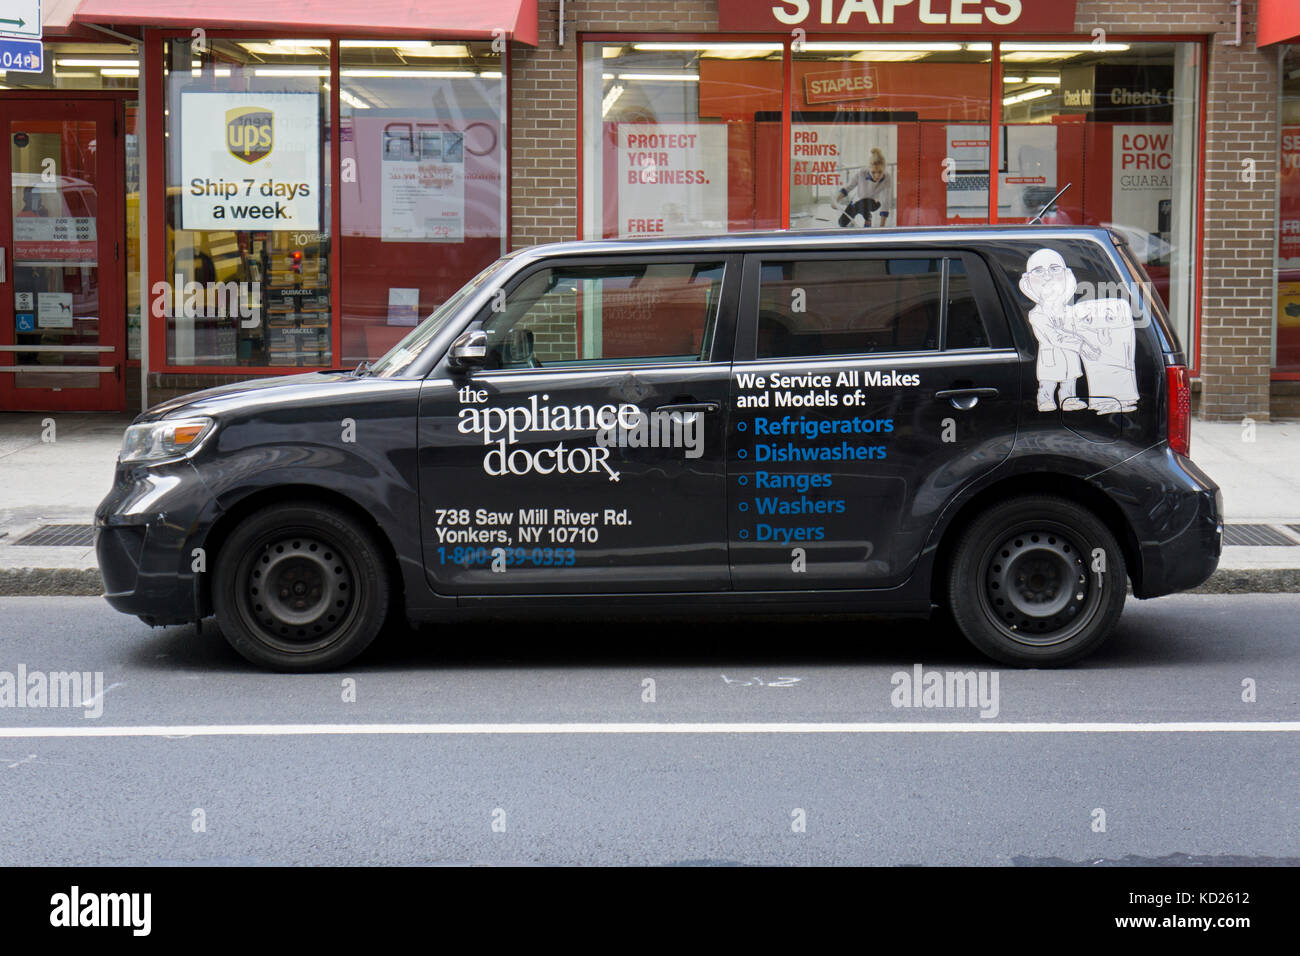 La vettura in prossimita' dell'apparecchio medico, un business che rende la casa chiamate per fissare gli elettrodomestici. A Broadway nel Greenwich Village, Manhattan NYC Foto Stock